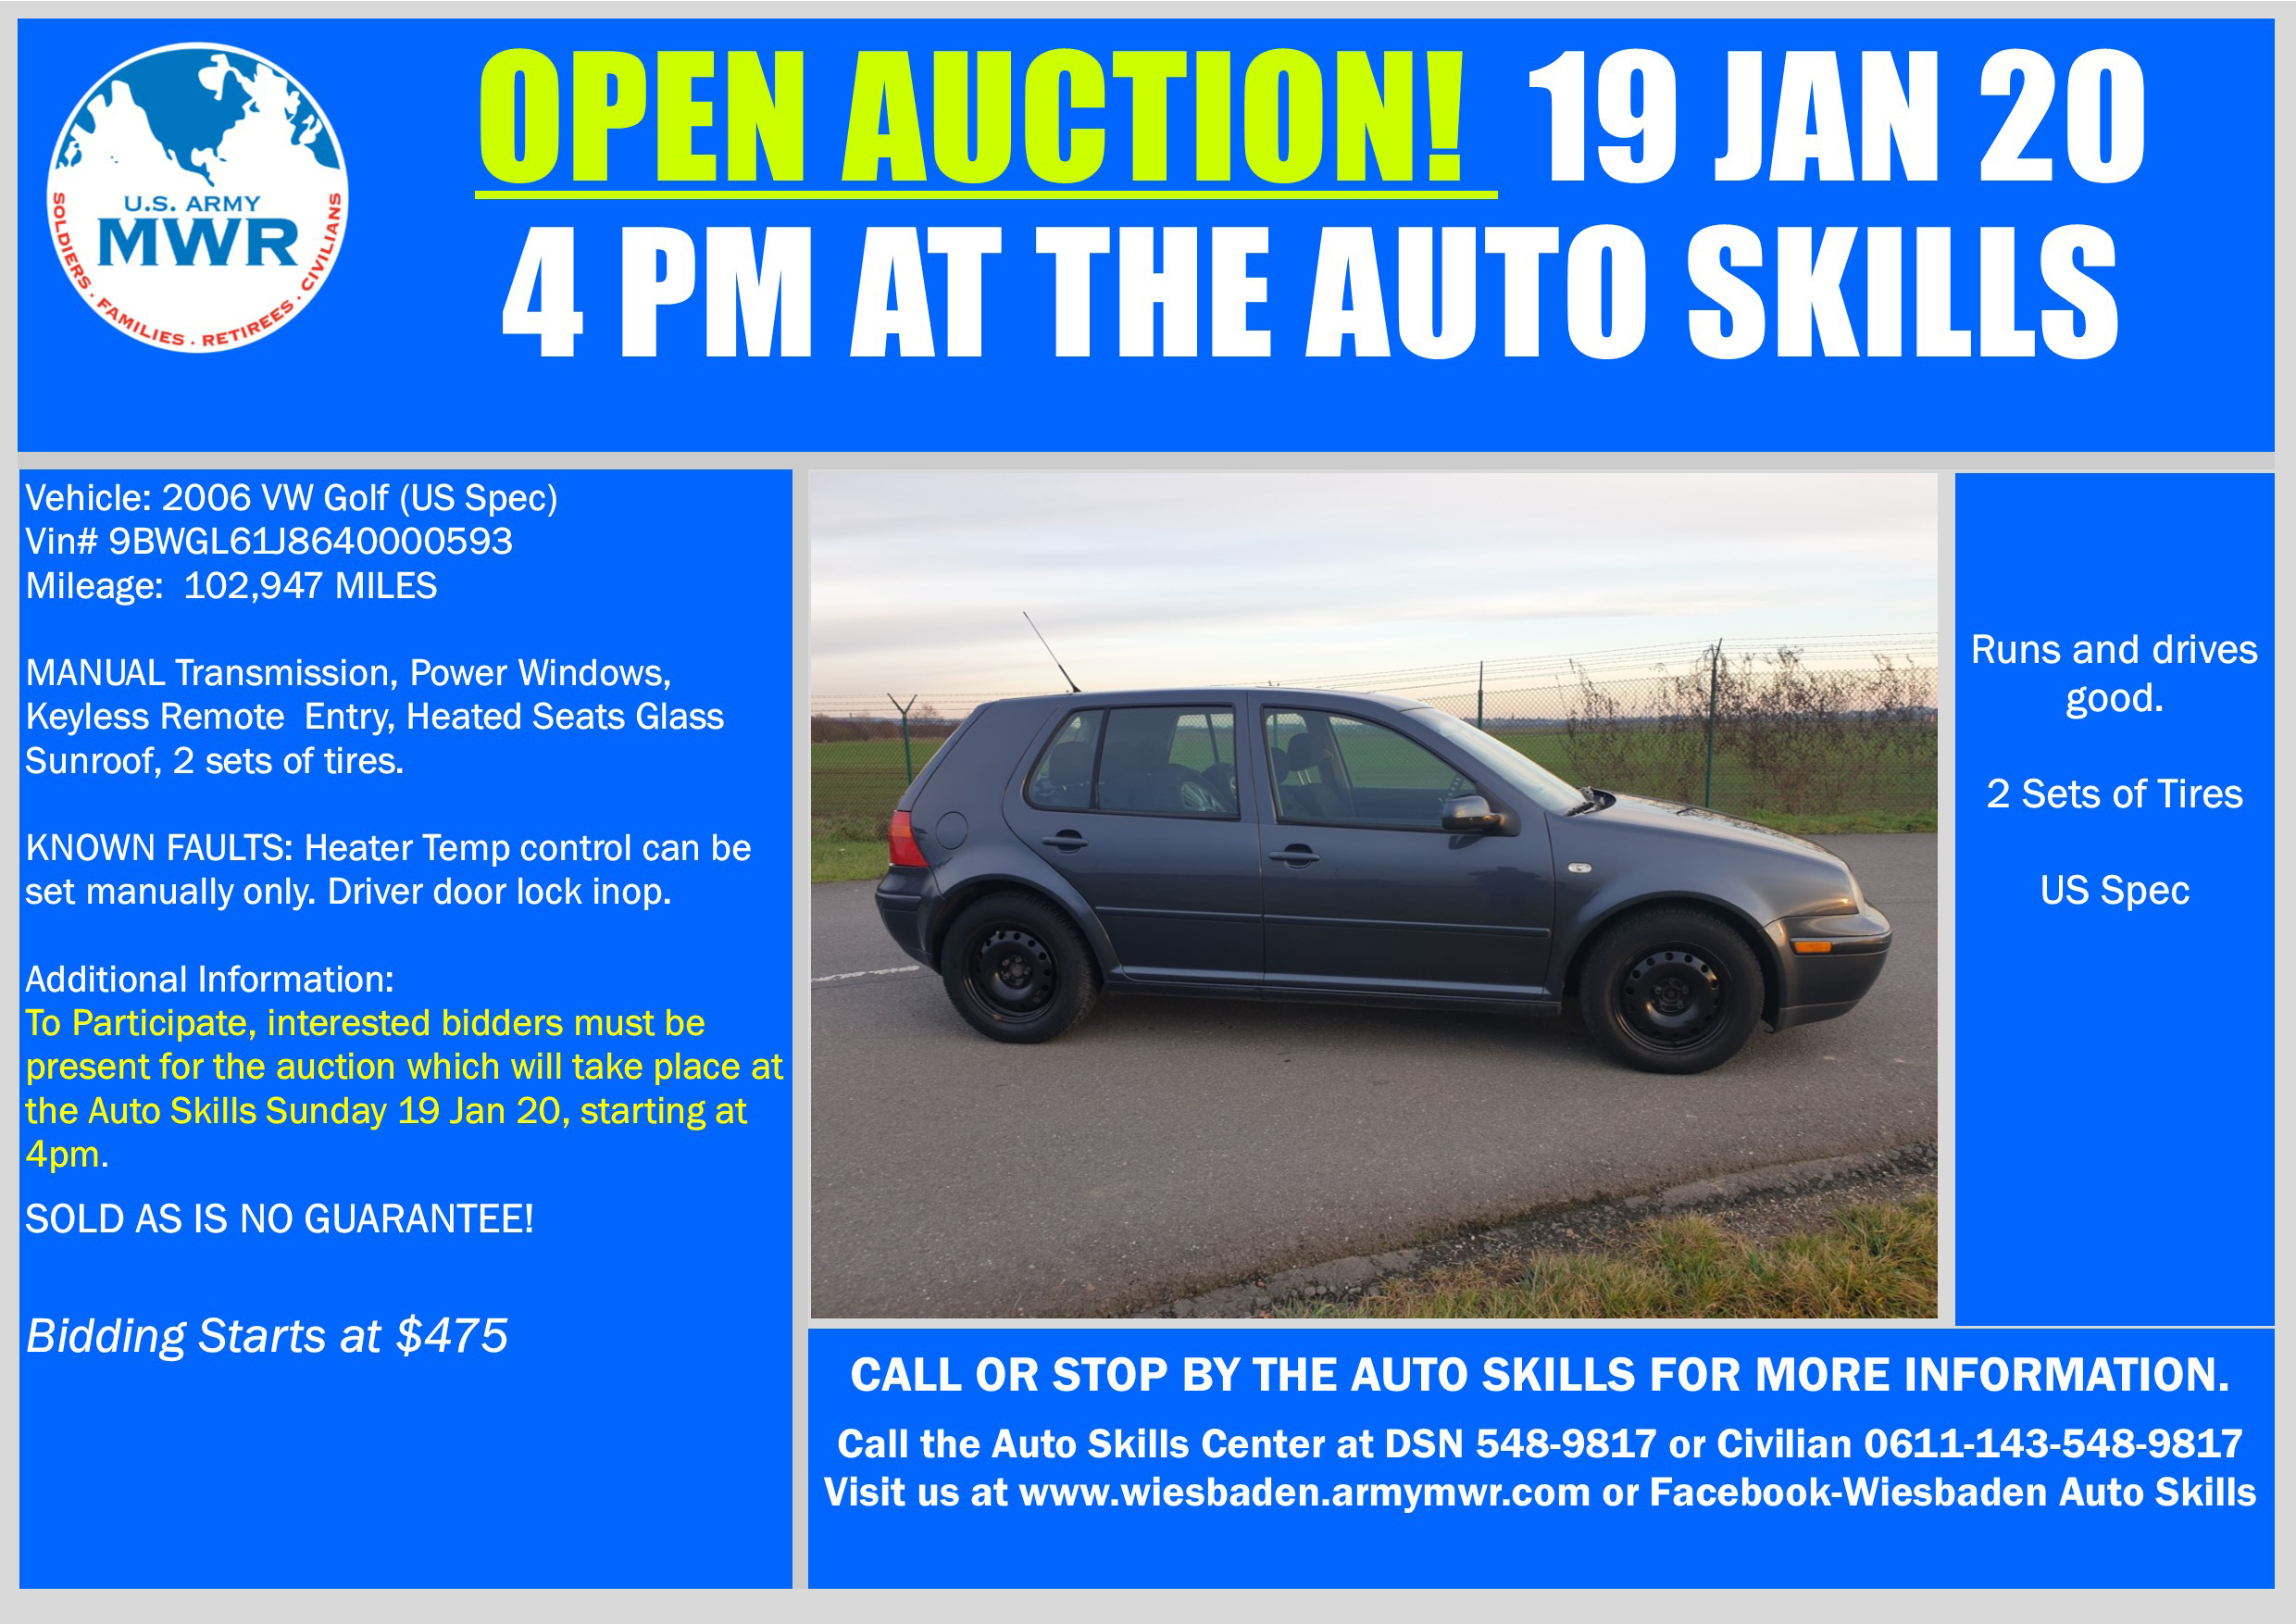 Sale VW Golf Open Auction 19 Jan 20.jpg